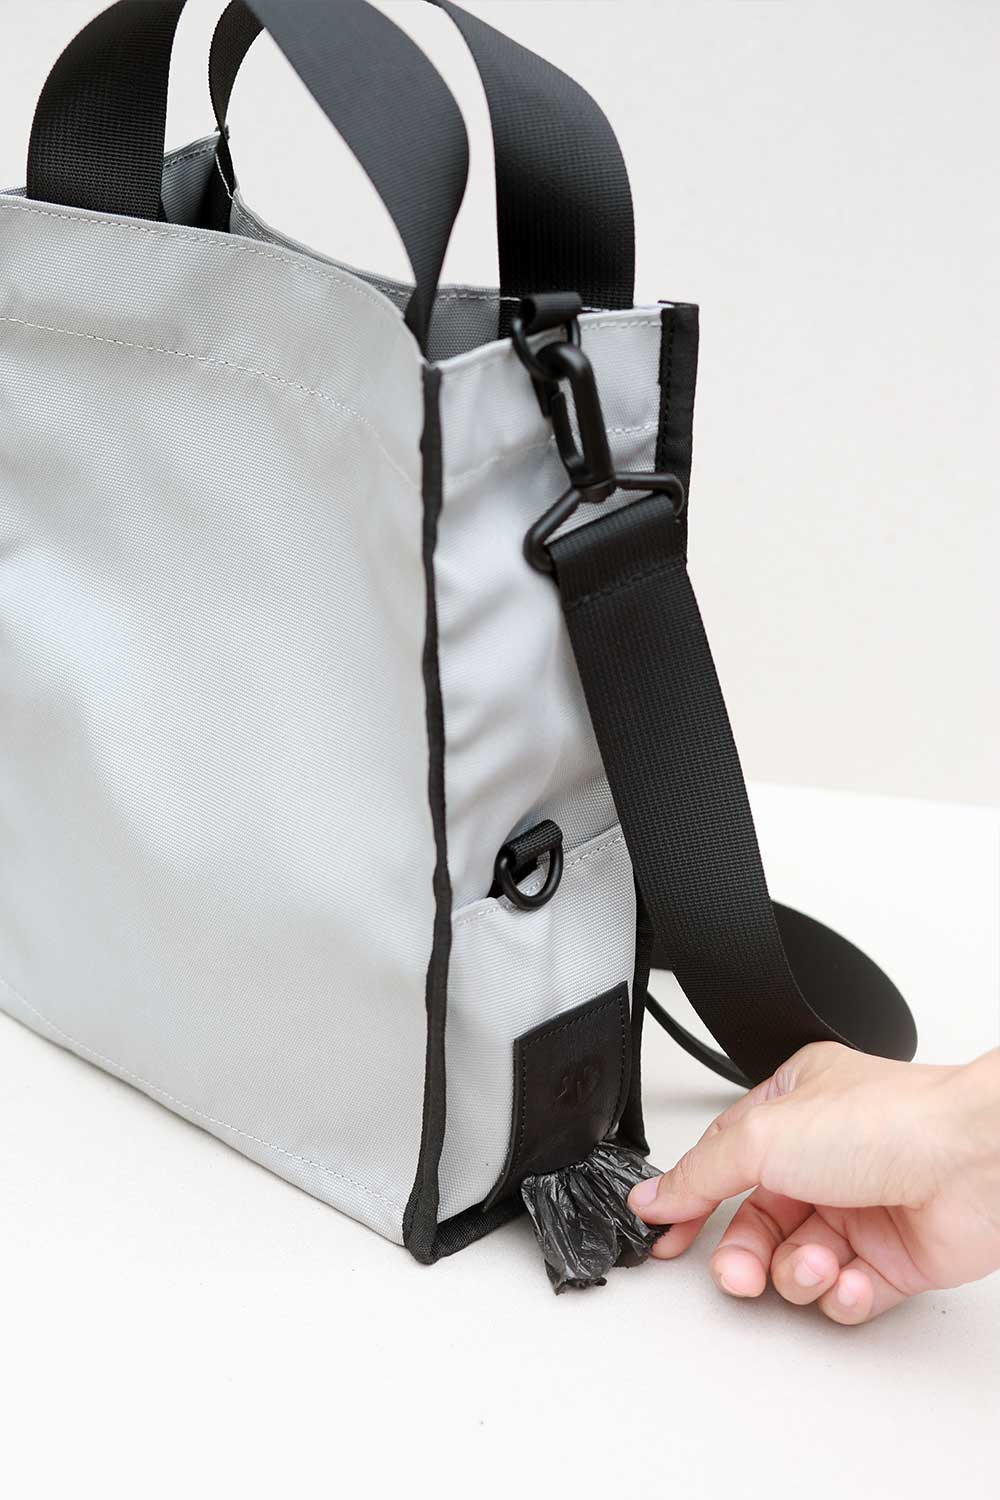 基本款遛狗包 - 防水 - 3 種多功能 - 便便袋鑰匙圈毛巾架